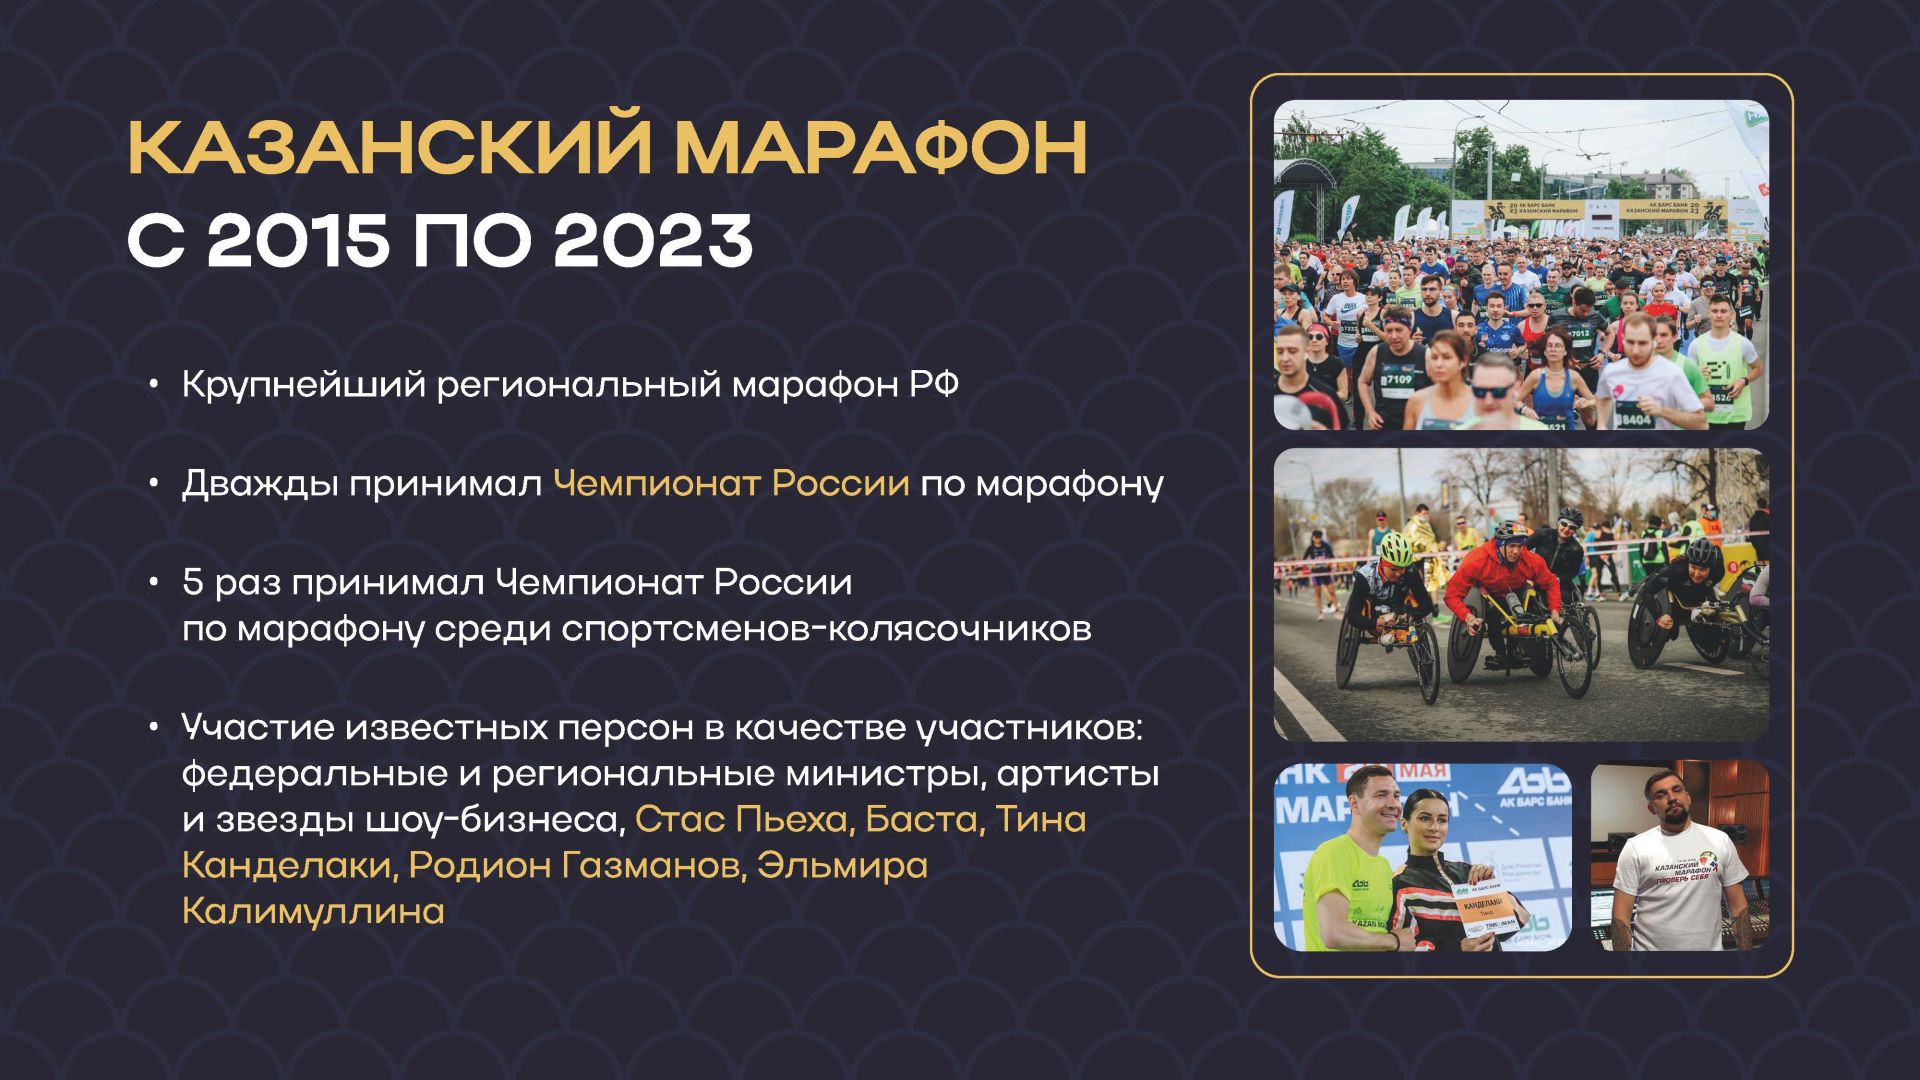 Мамадышцев приглашают к участию в Казанском марафоне 2024